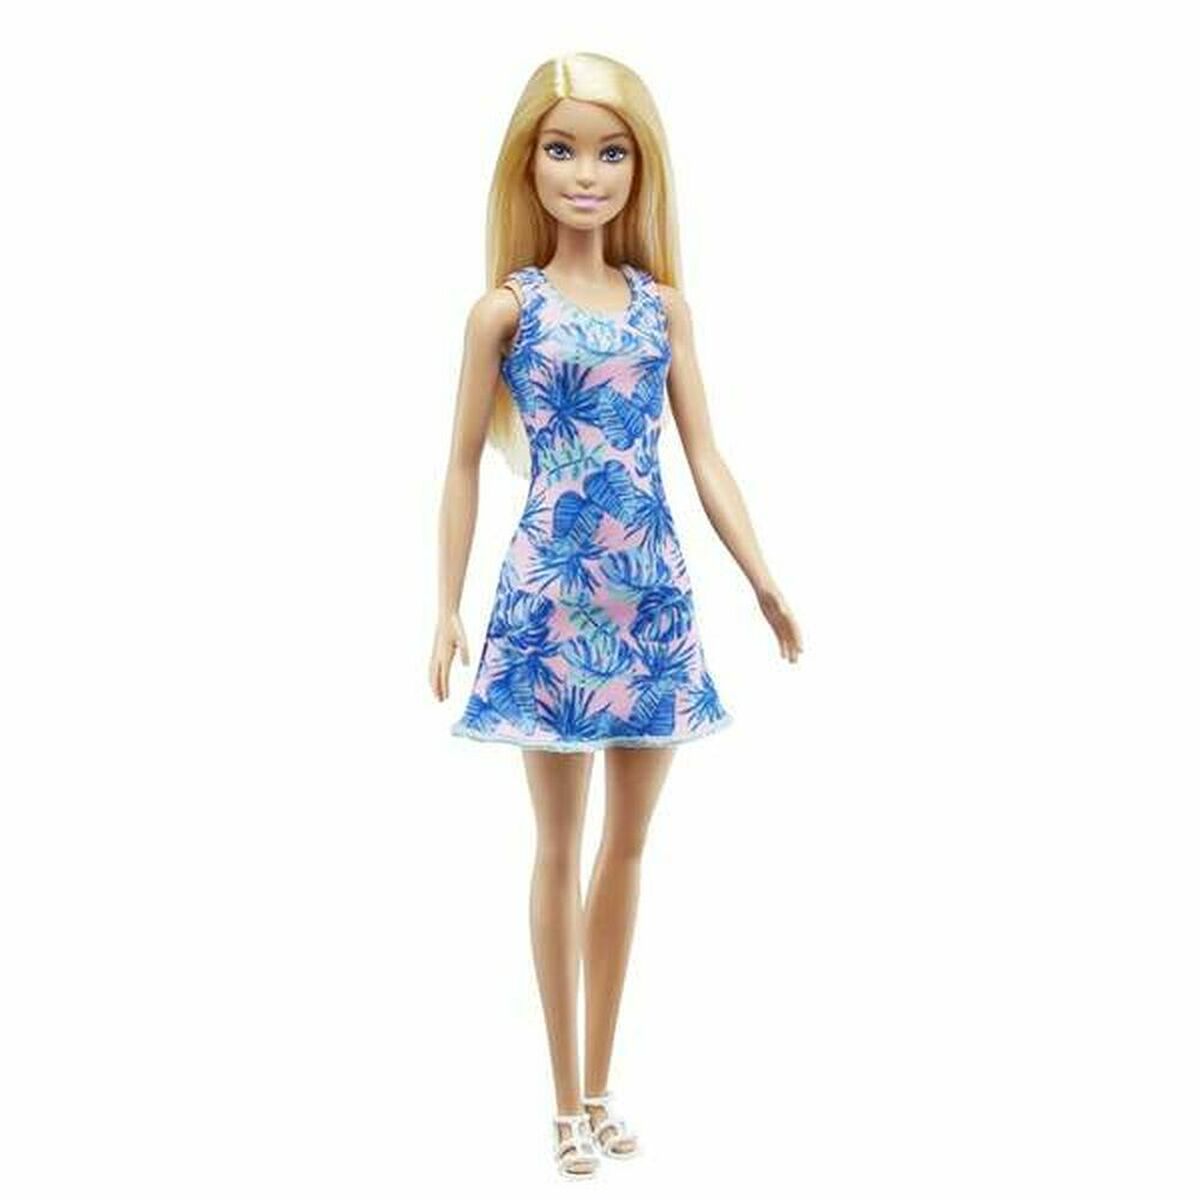 Docka Barbie And Her Purple Convertible-Leksaker och spel, Dockor och tillbehör-Barbie-peaceofhome.se